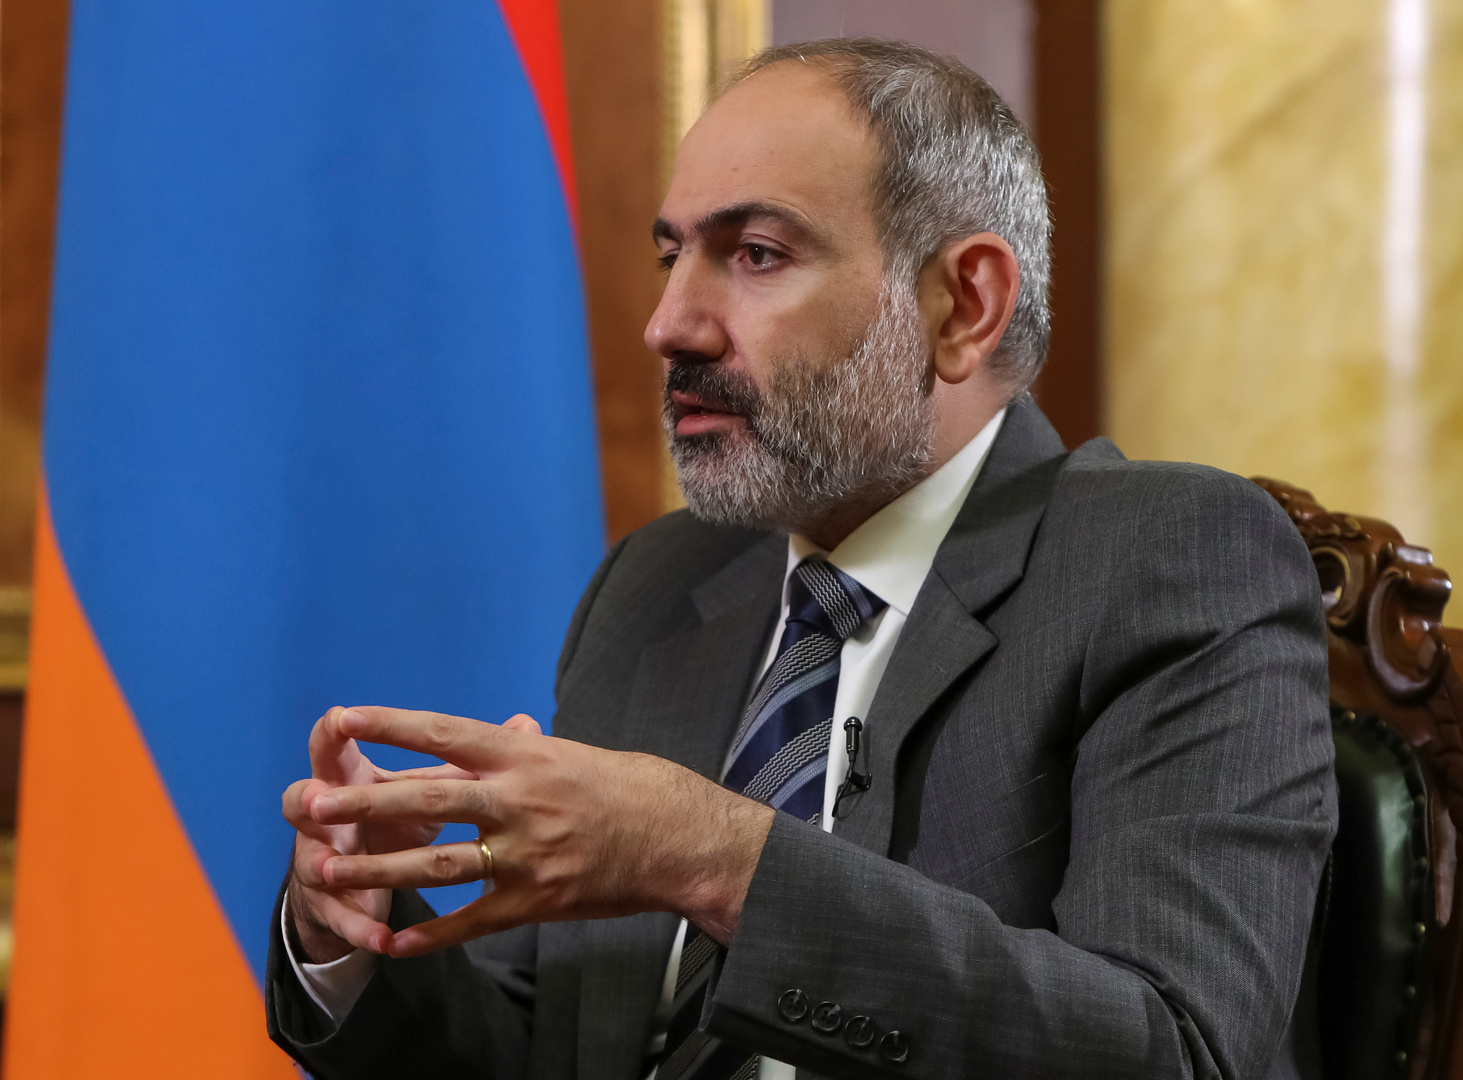 رئيس وزراء أرمينيا يكشف عن هدف تركيا من الحرب في قره باغ حسب رأيه